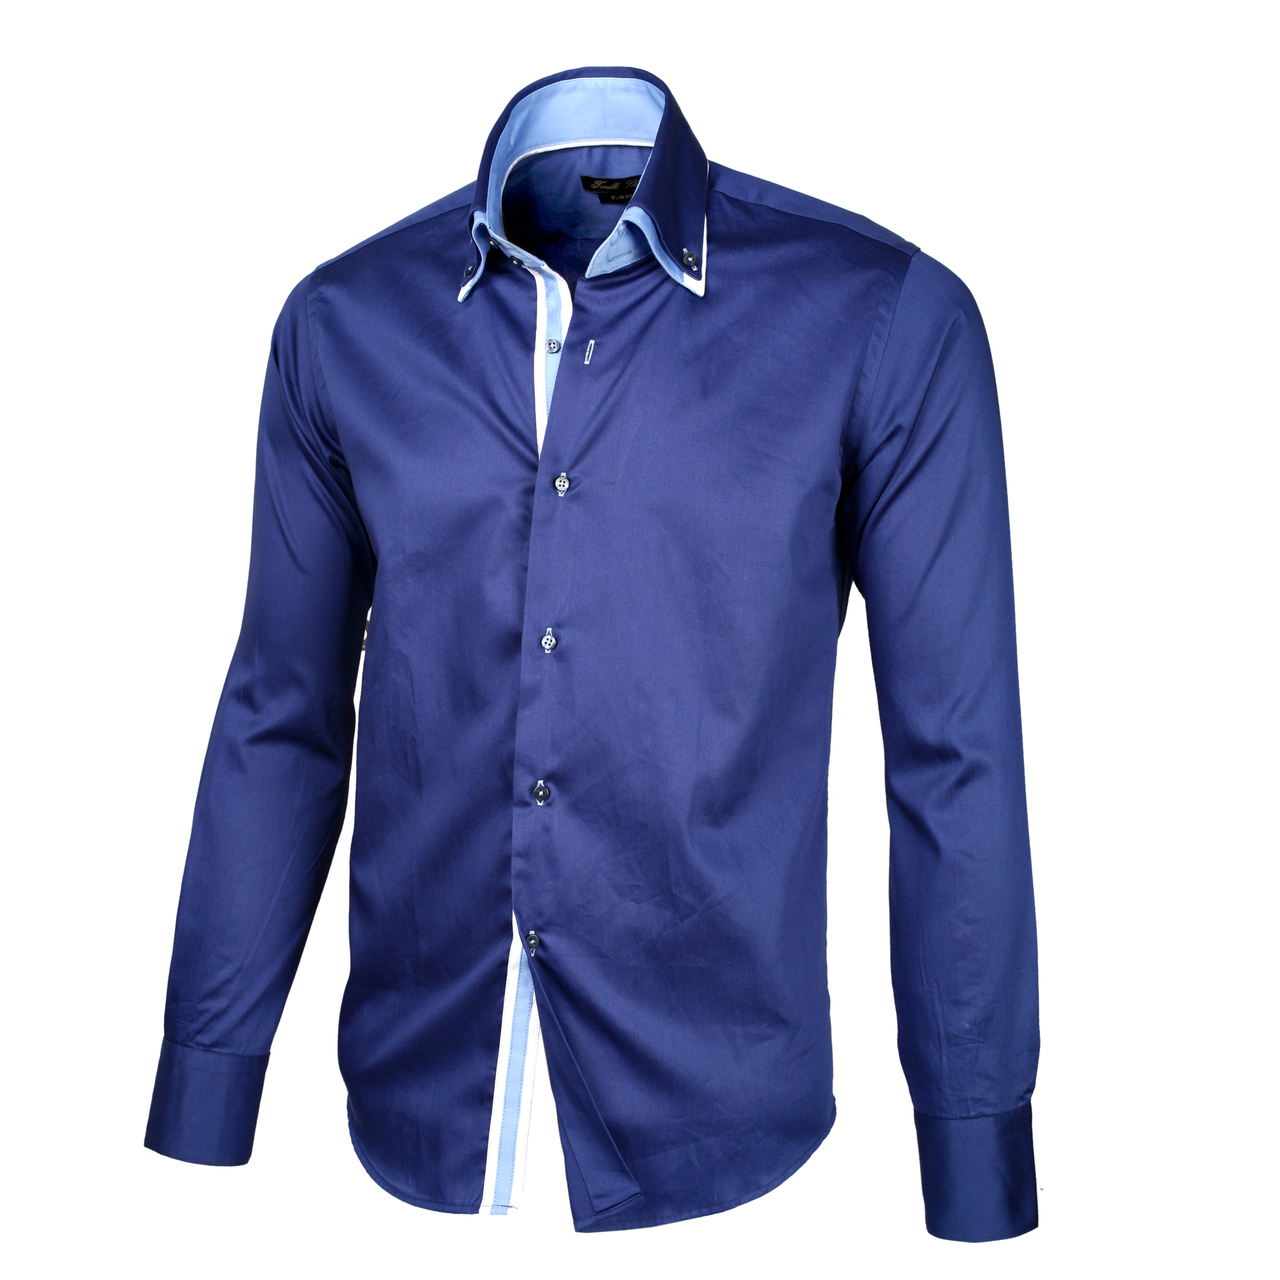 Мужские рубашки каталог. Рубашка мужская Mavi m021190-80692. Синяя рубашка. Синяя рубашка мужская. Красивые рубашки для мужчин.